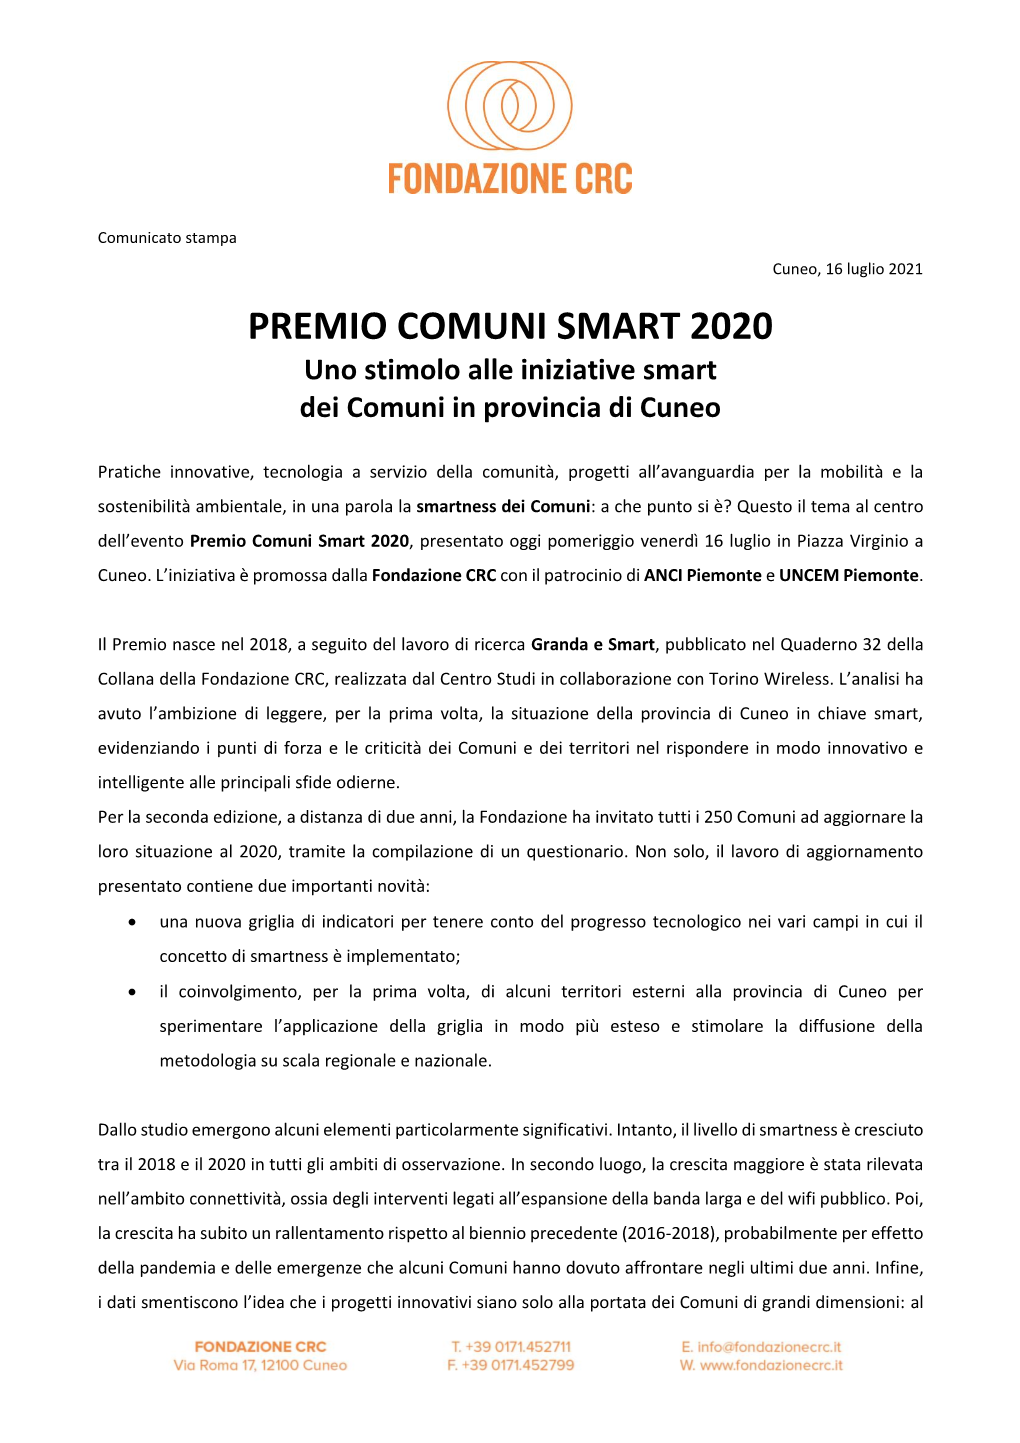 PREMIO COMUNI SMART 2020 Uno Stimolo Alle Iniziative Smart Dei Comuni in Provincia Di Cuneo